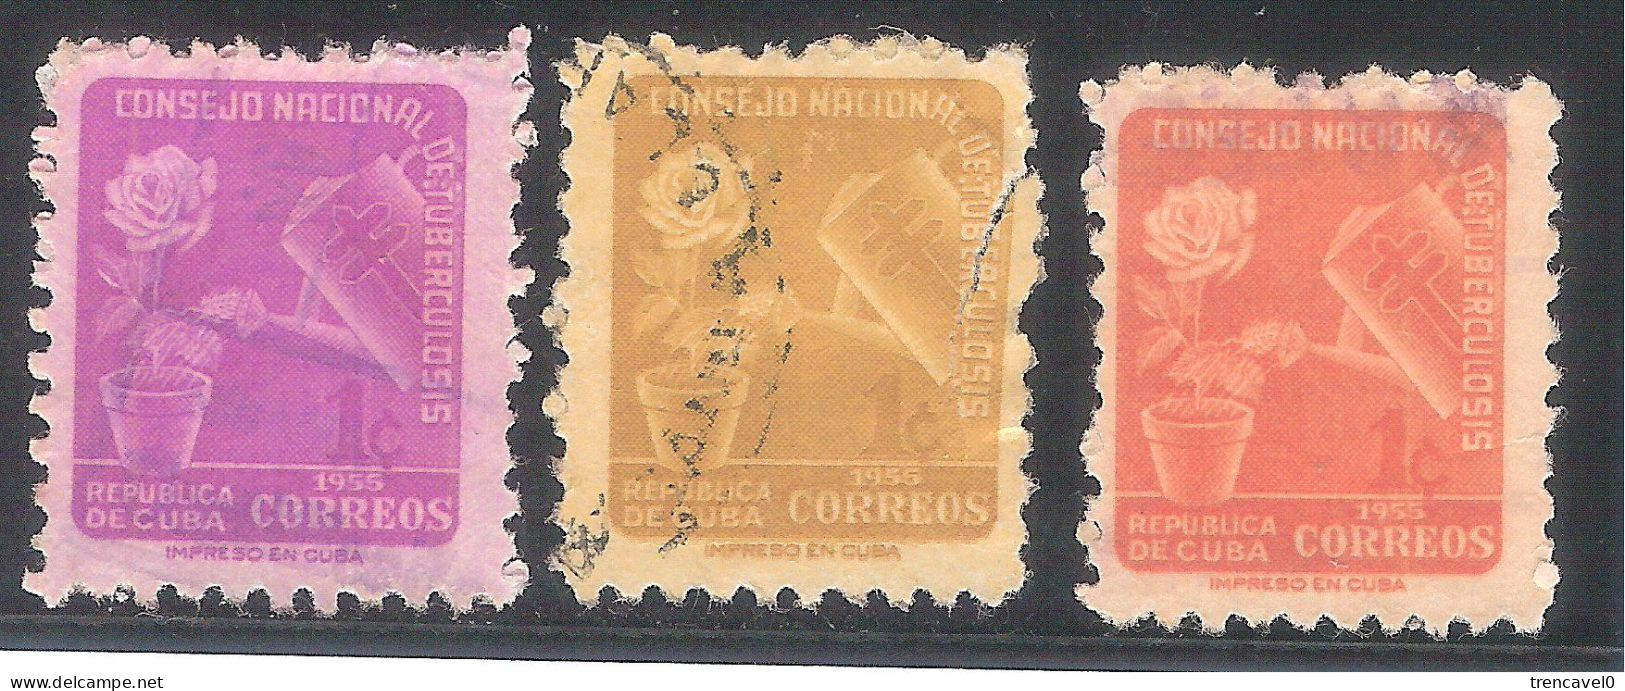 Cuba 1955 - 3 Sellos Usados Y Circulados - Consejo Nacional De Tuberculosis - Wohlfahrtsmarken